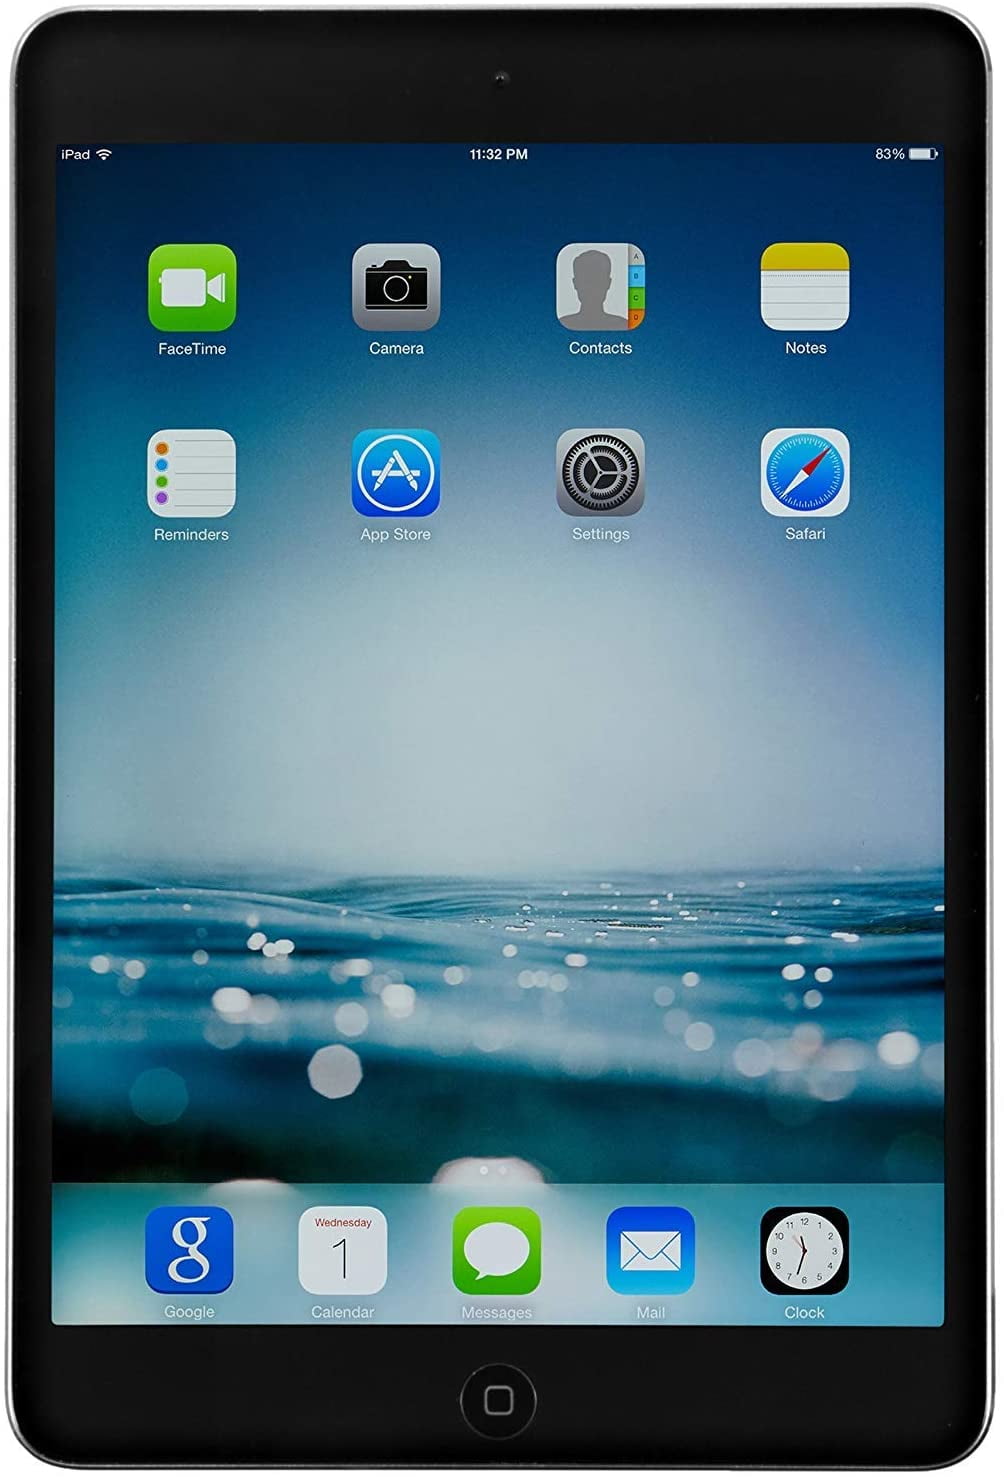 Apple iPad Mini 2 - 16GB WiFi + Cellular - Space Gray (Refurbished